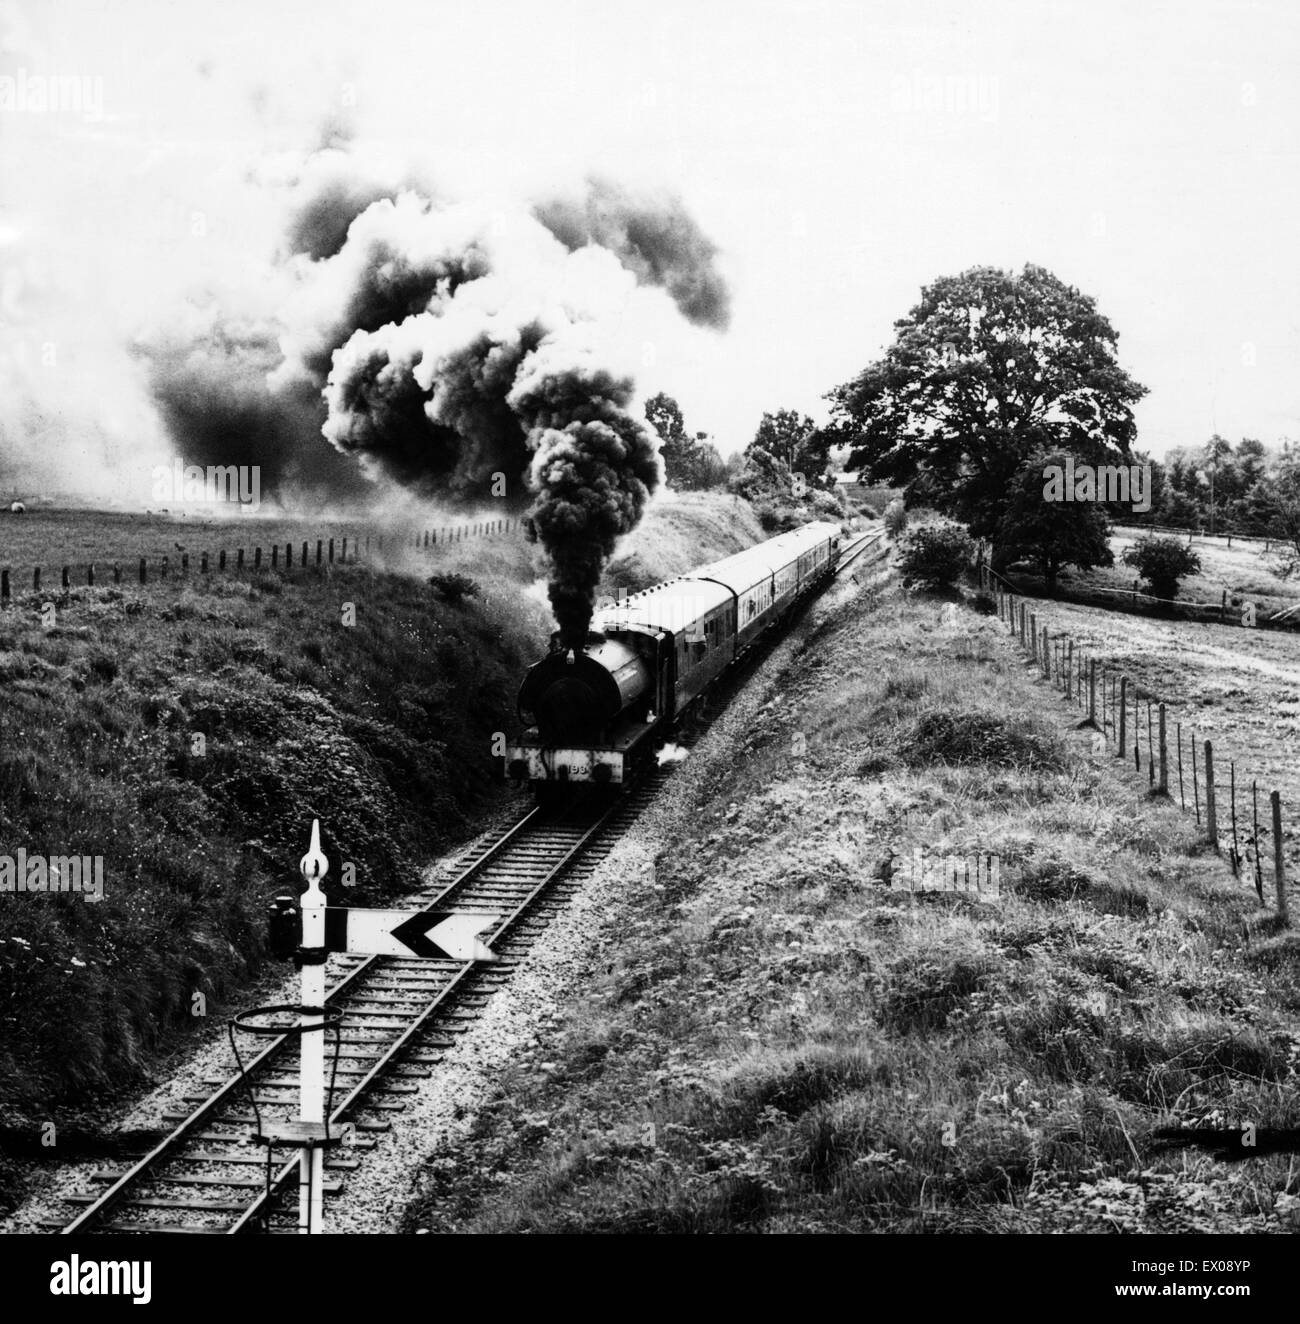 Antiguo ferrocarril midland Imágenes de stock en blanco y negro - Alamy